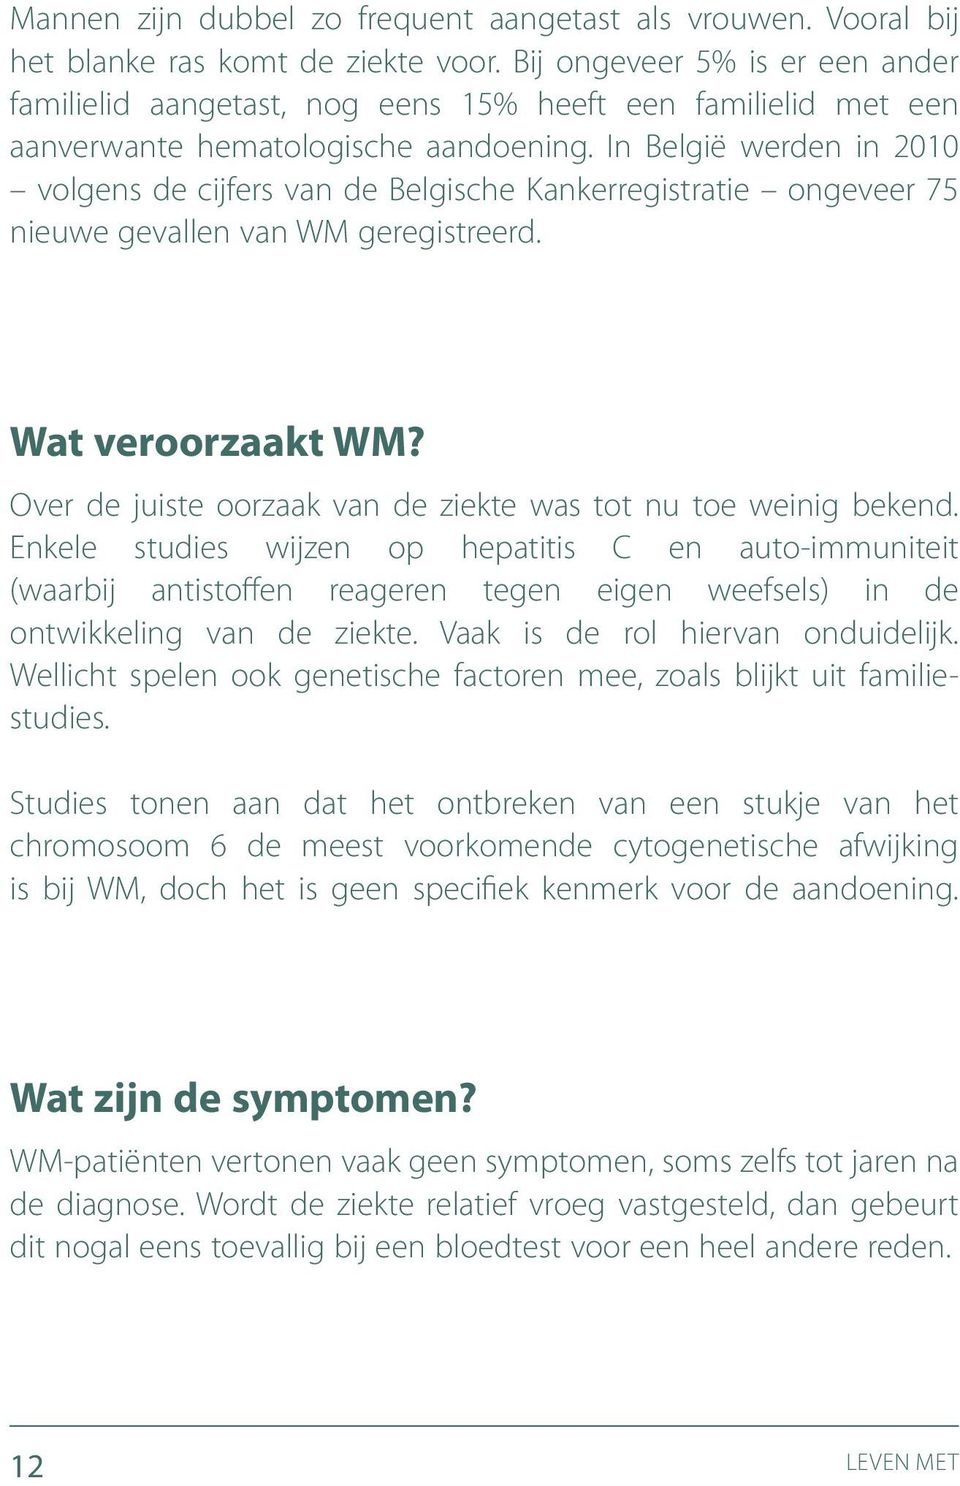 In België werden in 2010 volgens de cijfers van de Belgische Kankerregistratie ongeveer 75 nieuwe gevallen van WM geregistreerd. Wat veroorzaakt WM?